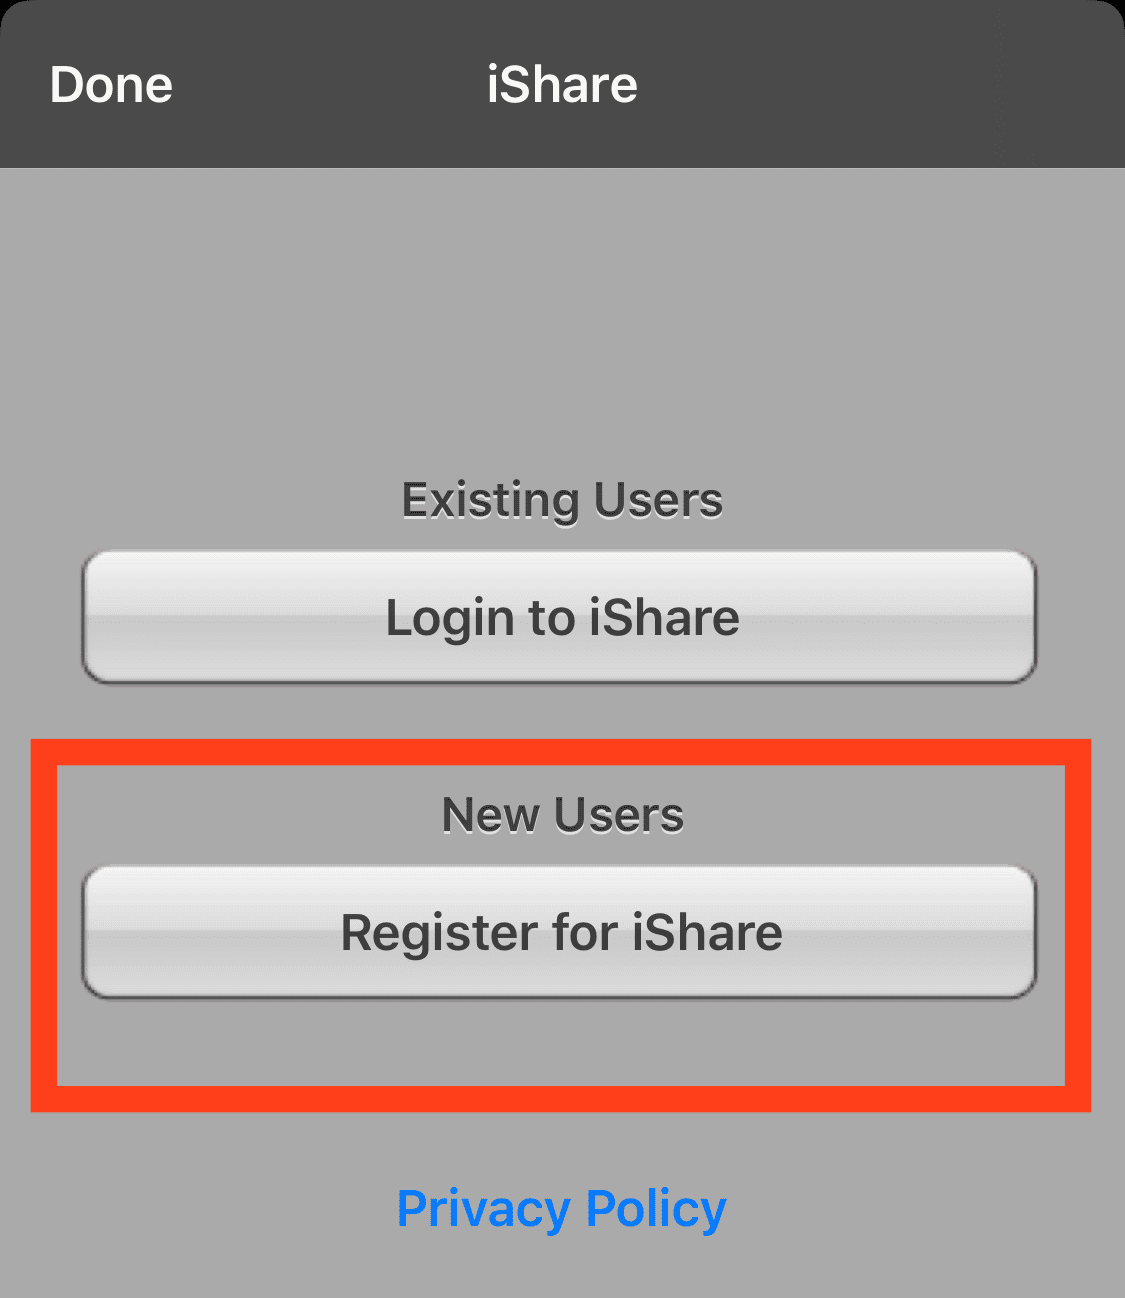 Register for iShare